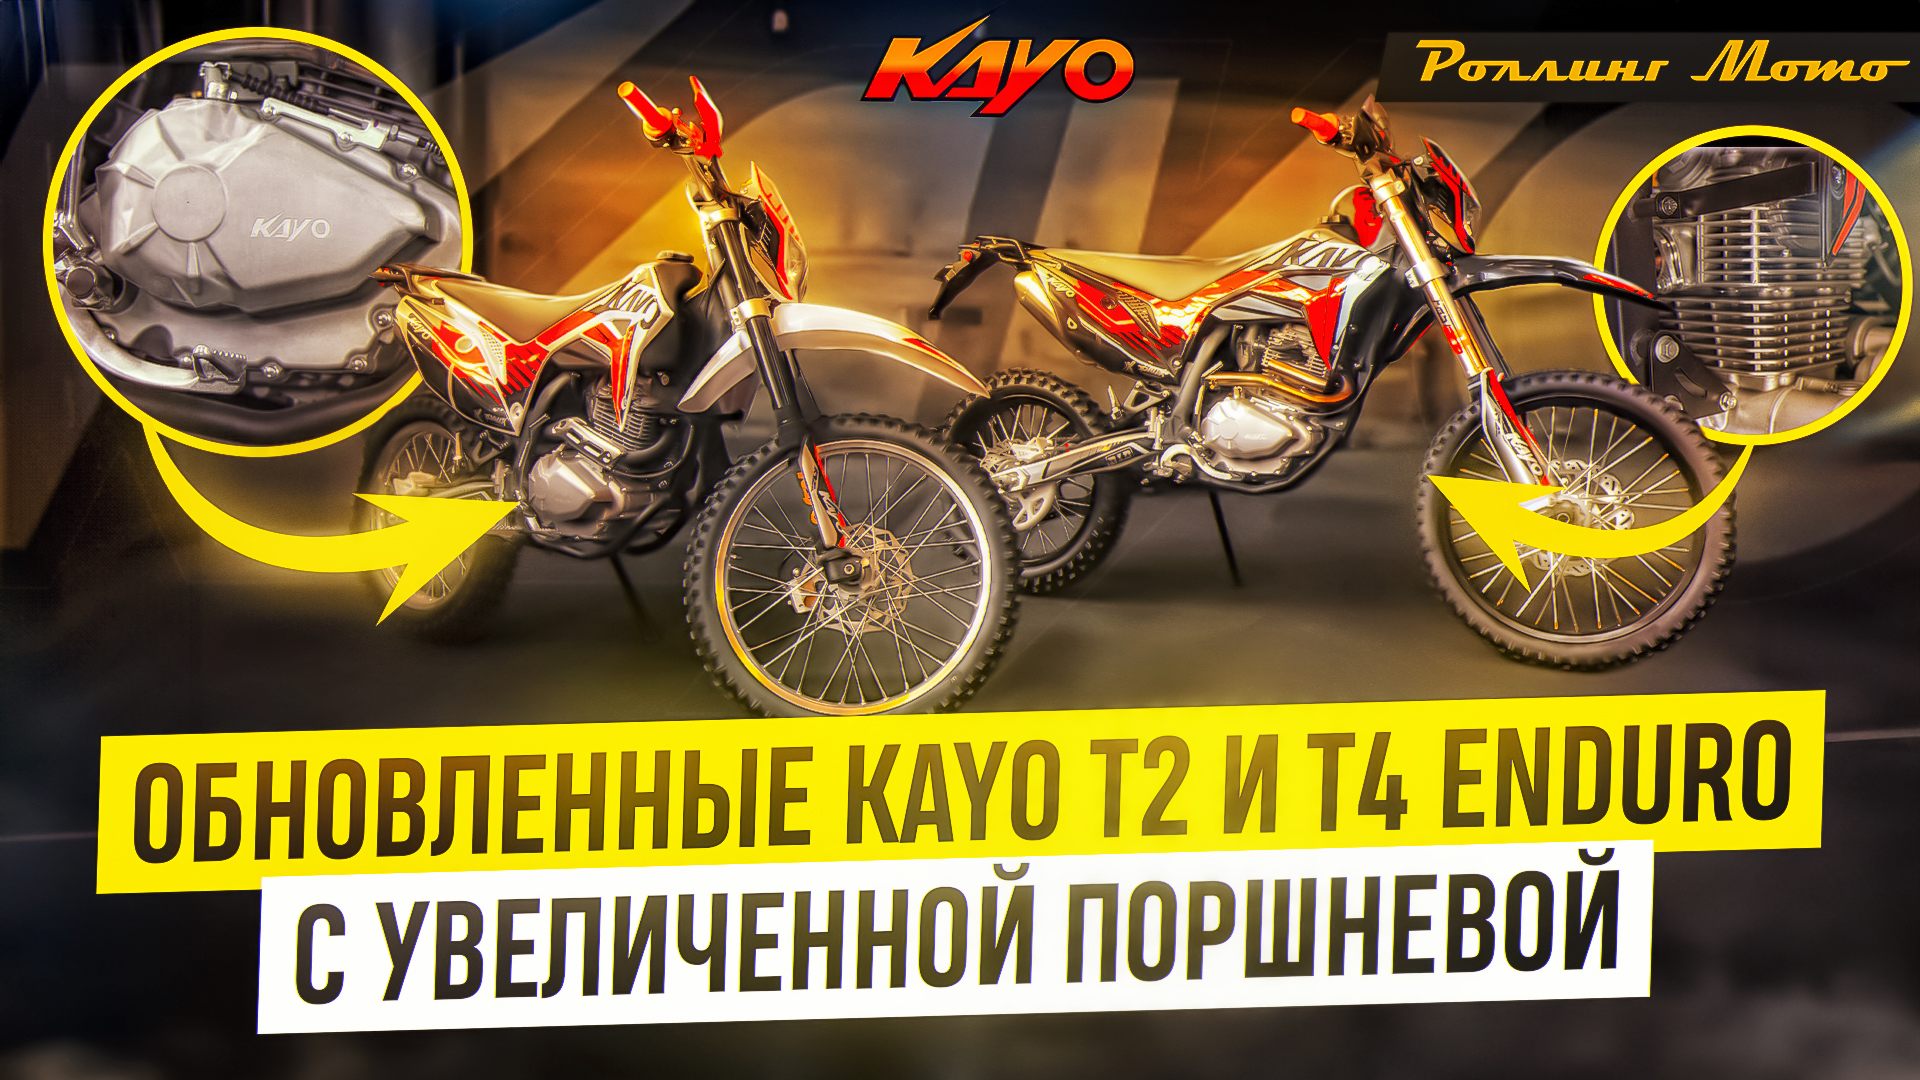 Больше, мощнее, быстрее! Kayo T2 и T4 Enduro 300cc с увеличенной поршневой | Роллинг Мото